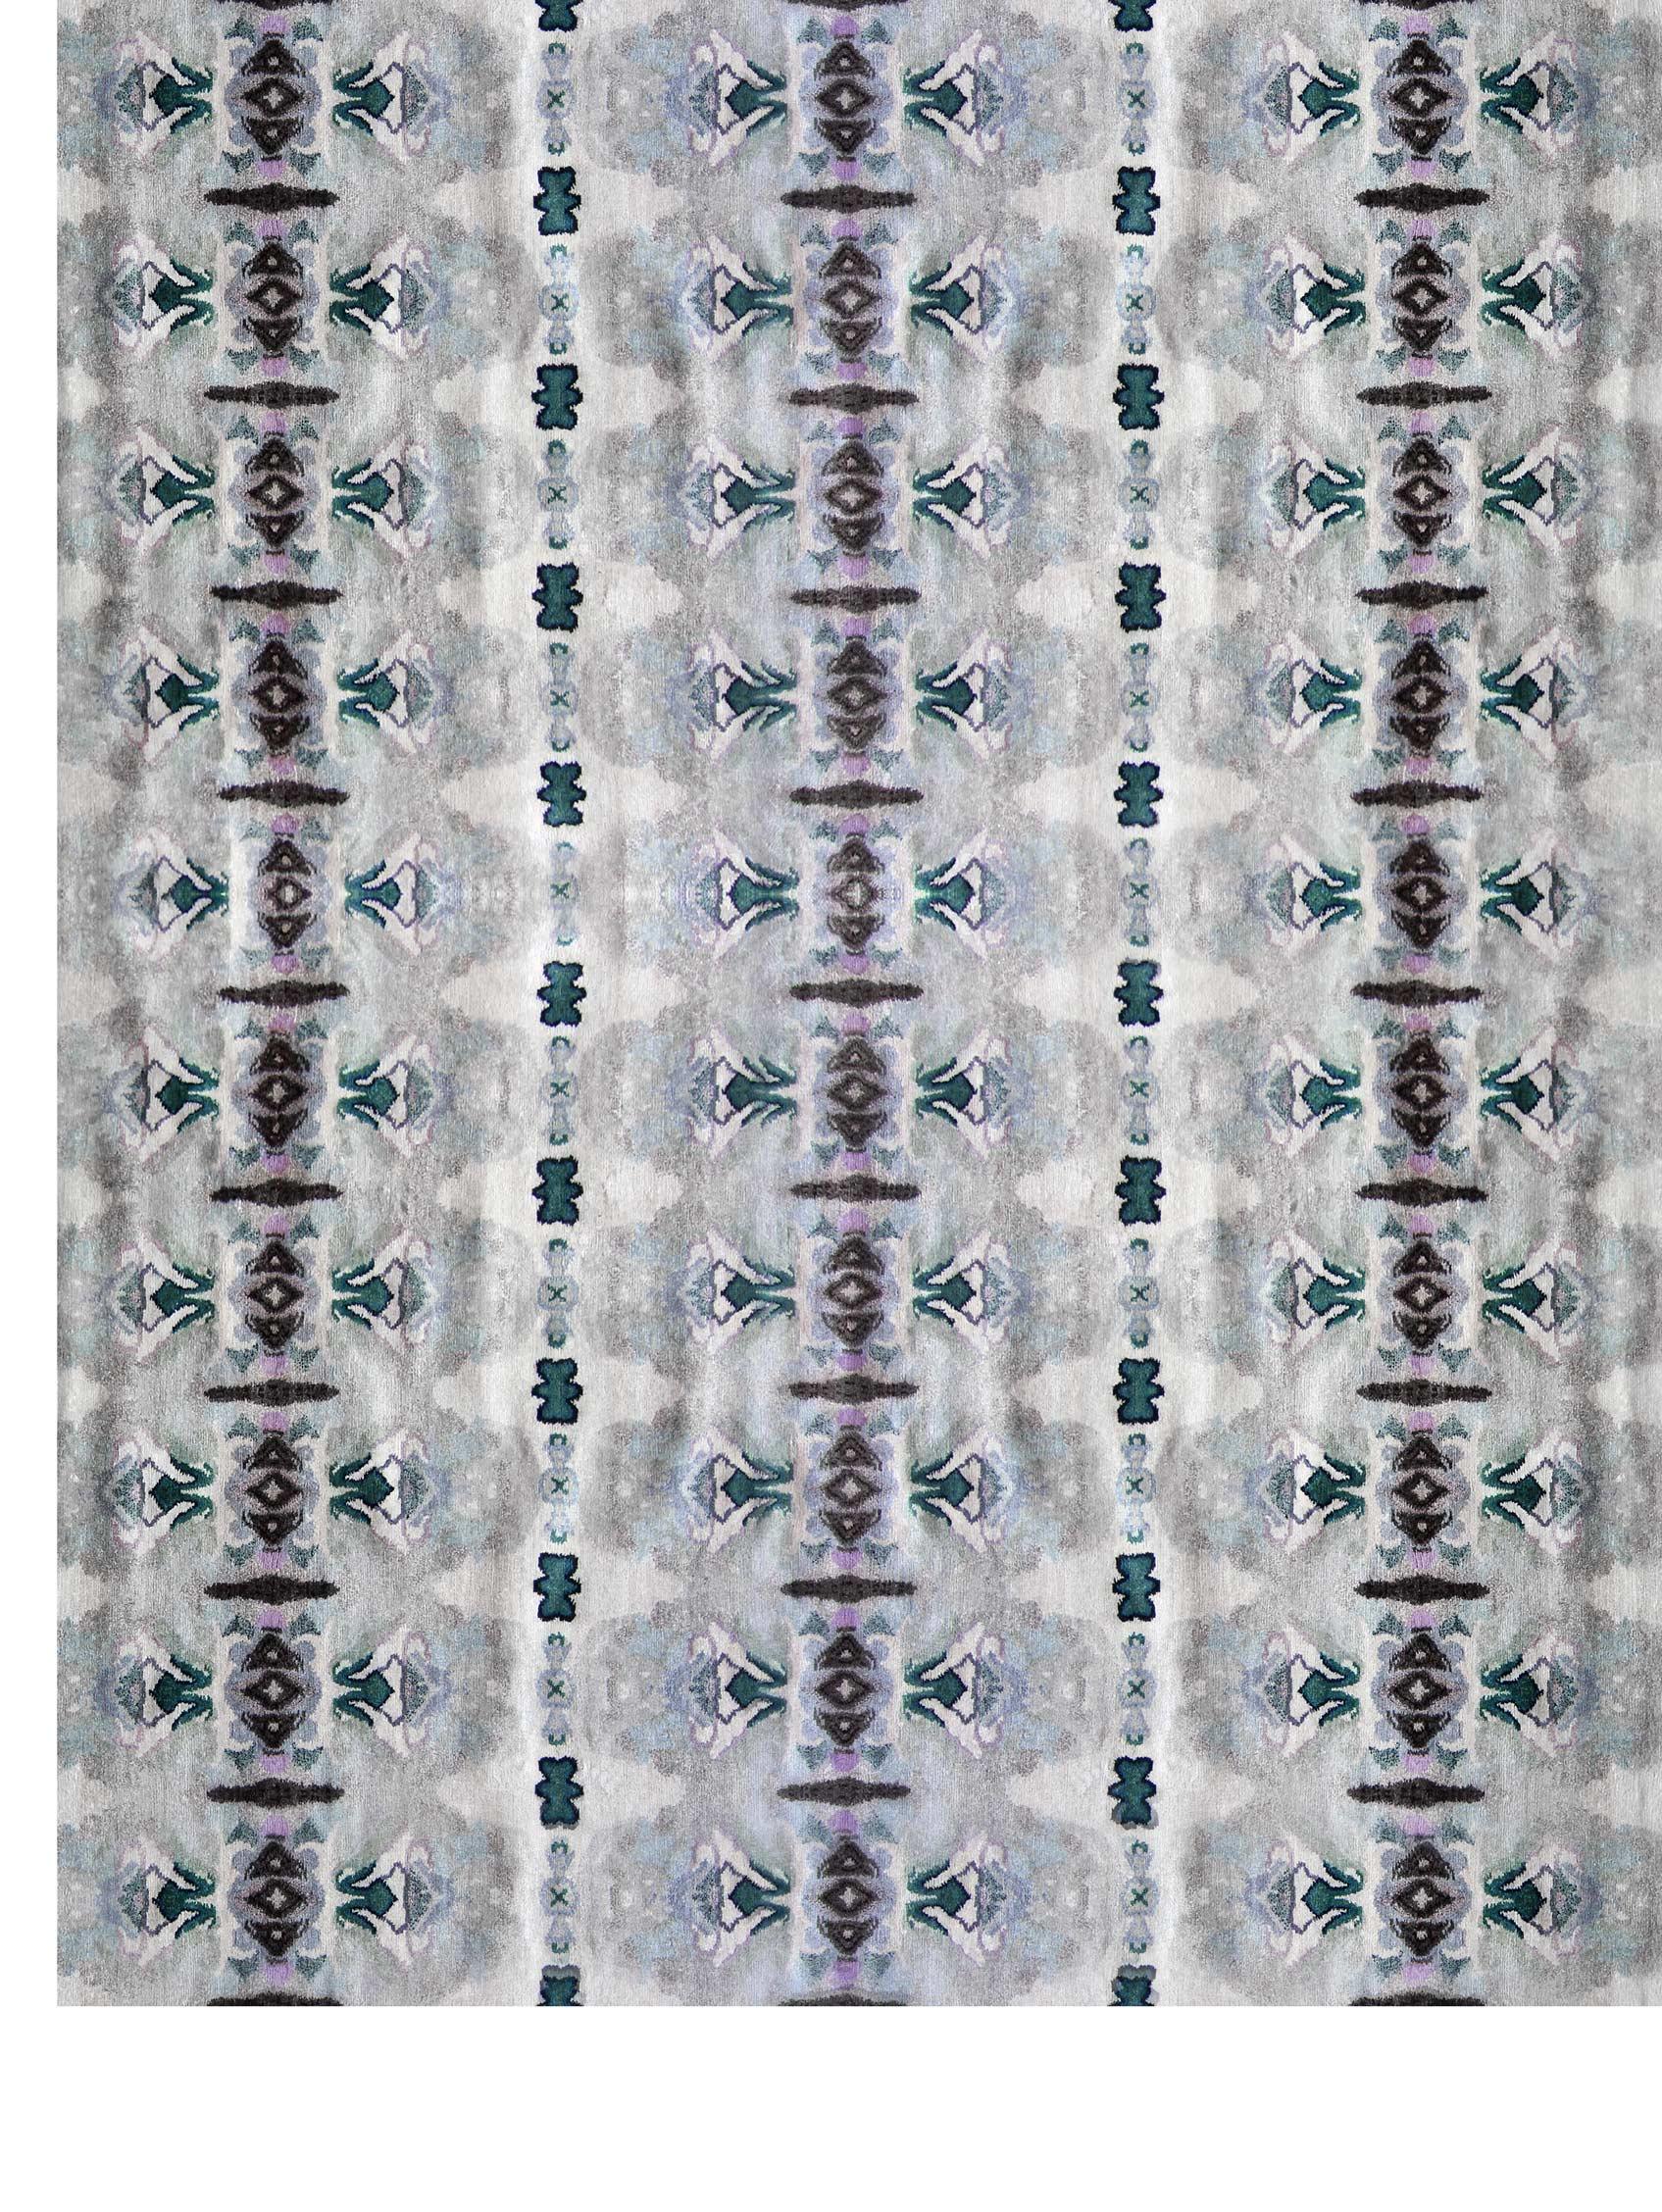 Septaria Heller handgeknüpfter Teppich von Eskayel
Abmessungen: D 8' x H 10'
MATERIALIEN: Wolle-Matka-Seide-Gemisch.

Die handgeknüpften Teppiche von Eskayel werden auf Bestellung gewebt und können in verschiedenen Größen, Farben, MATERIALEN und